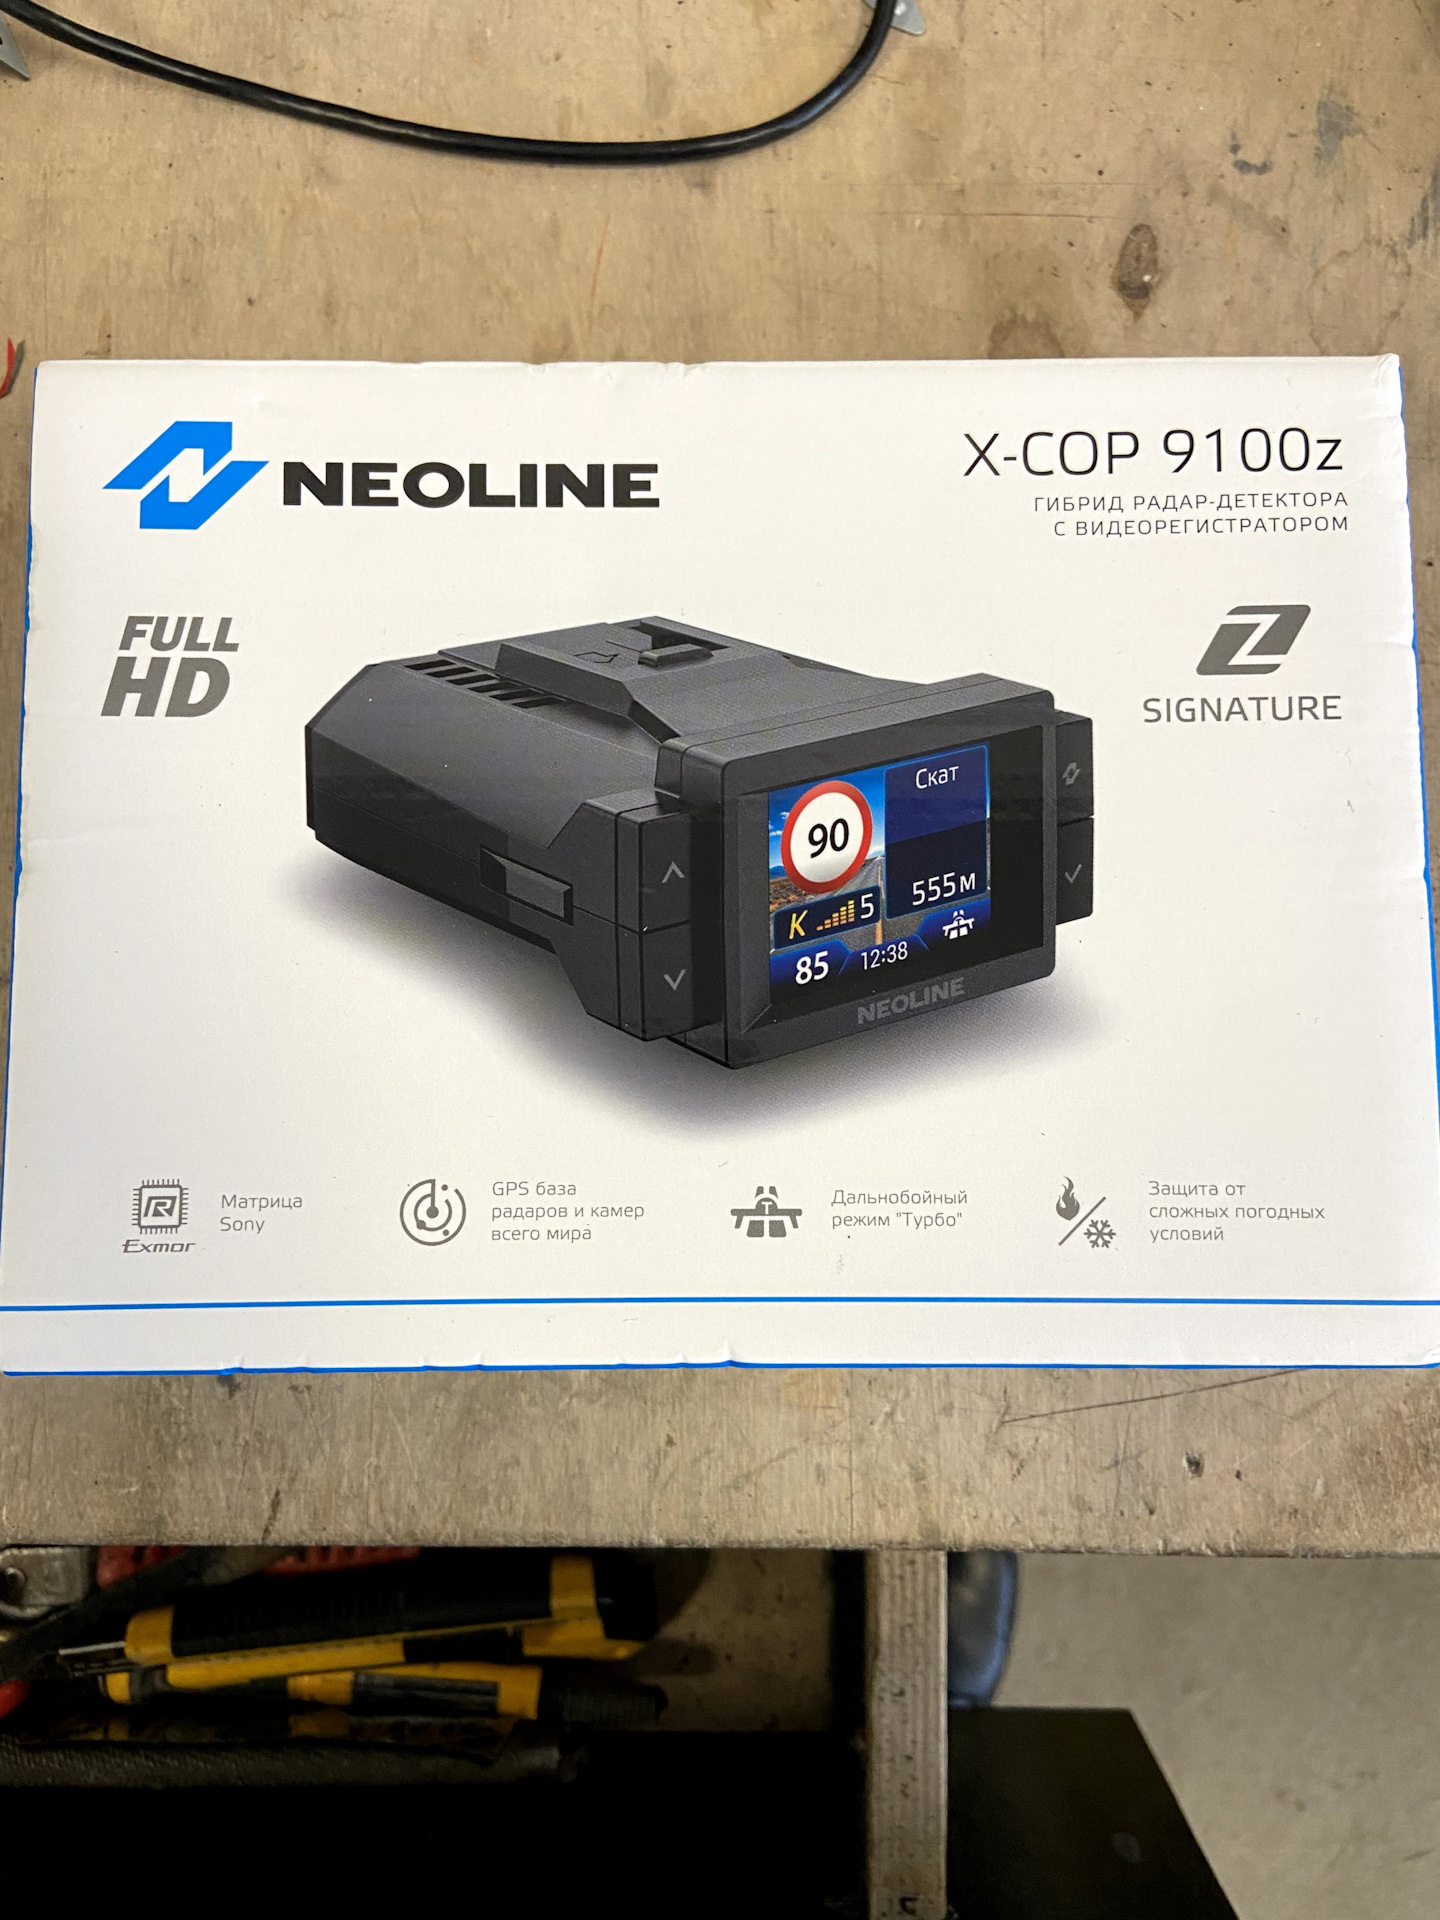 Neoline x cop 9100z. X cop 9100z. Neoline 9100z. Регистратор Neoline 9100z. Neoline x-cop 9100x.